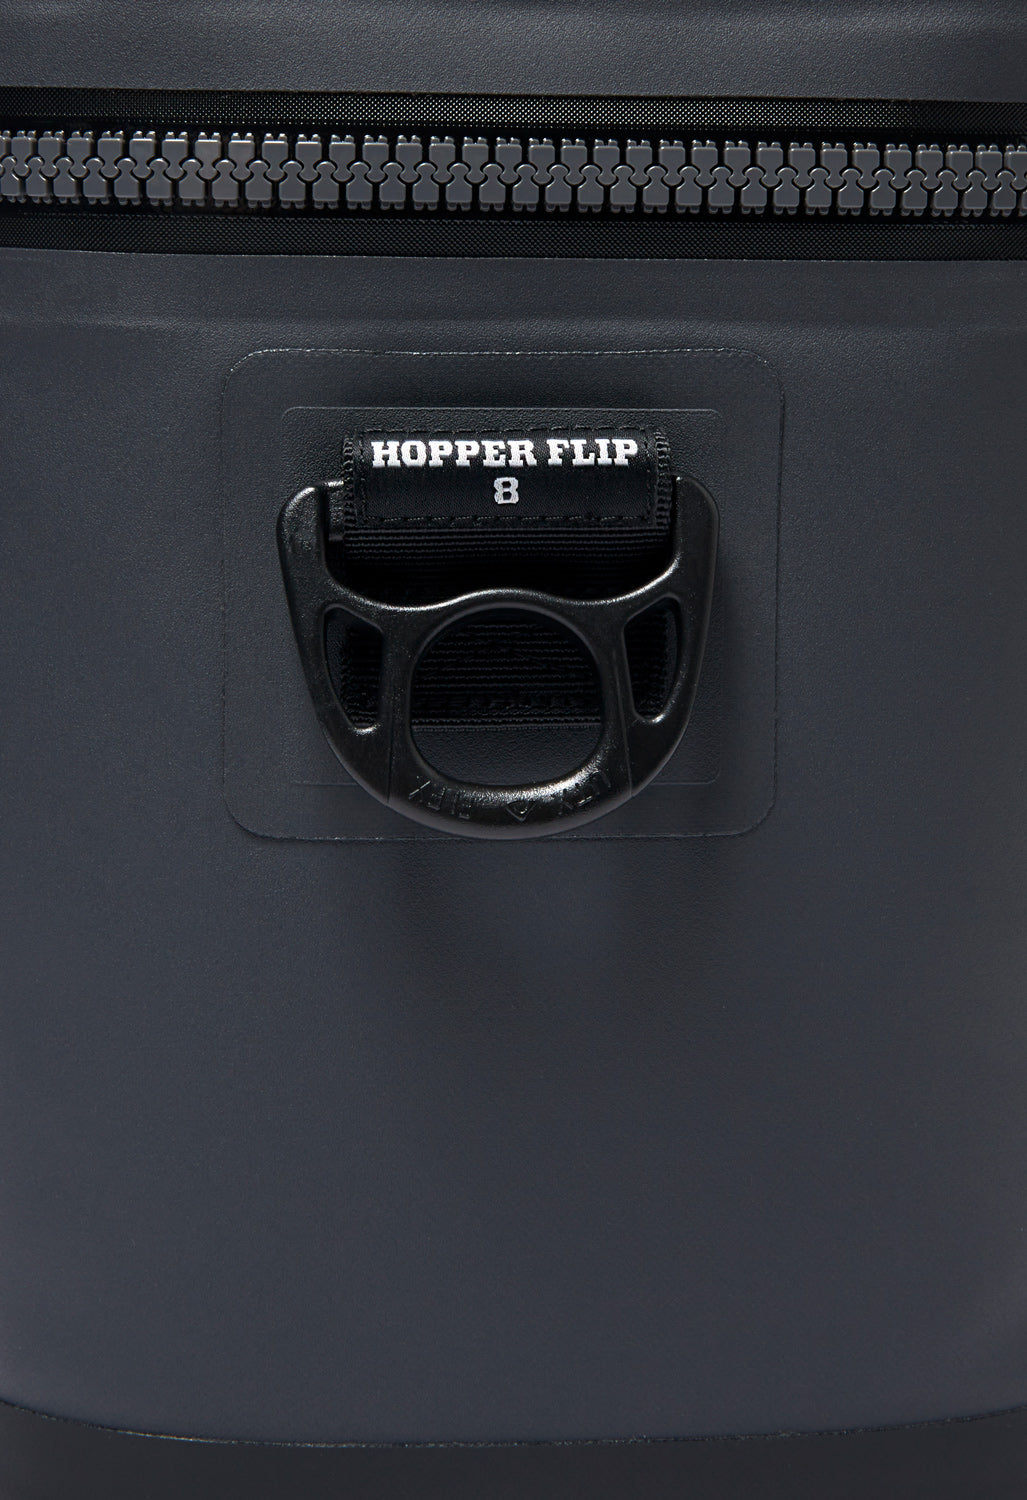 Yeti Hopper Flip 8 Cooler - Black